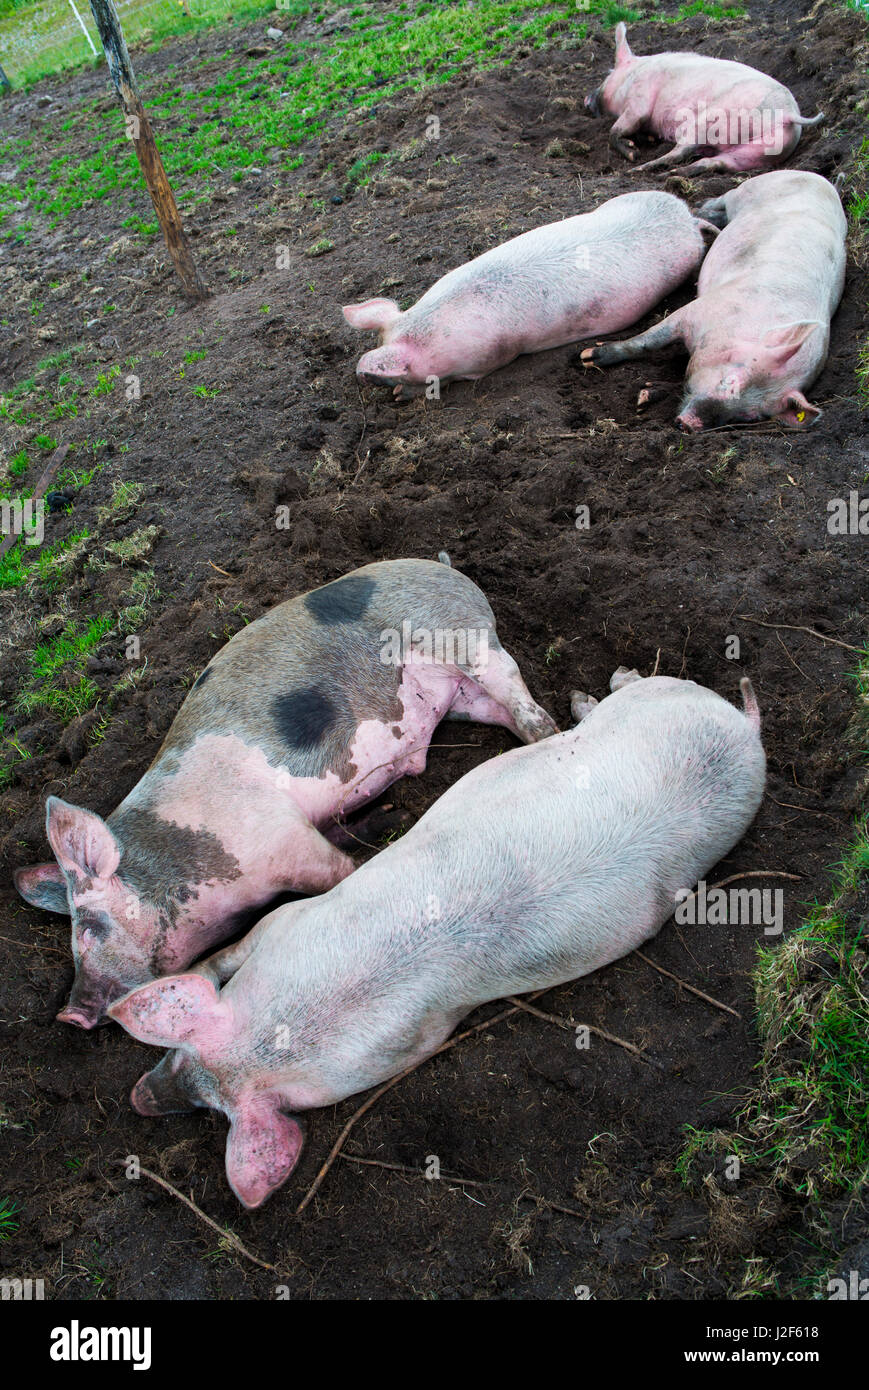 Les porcs freerange sleeping Banque D'Images